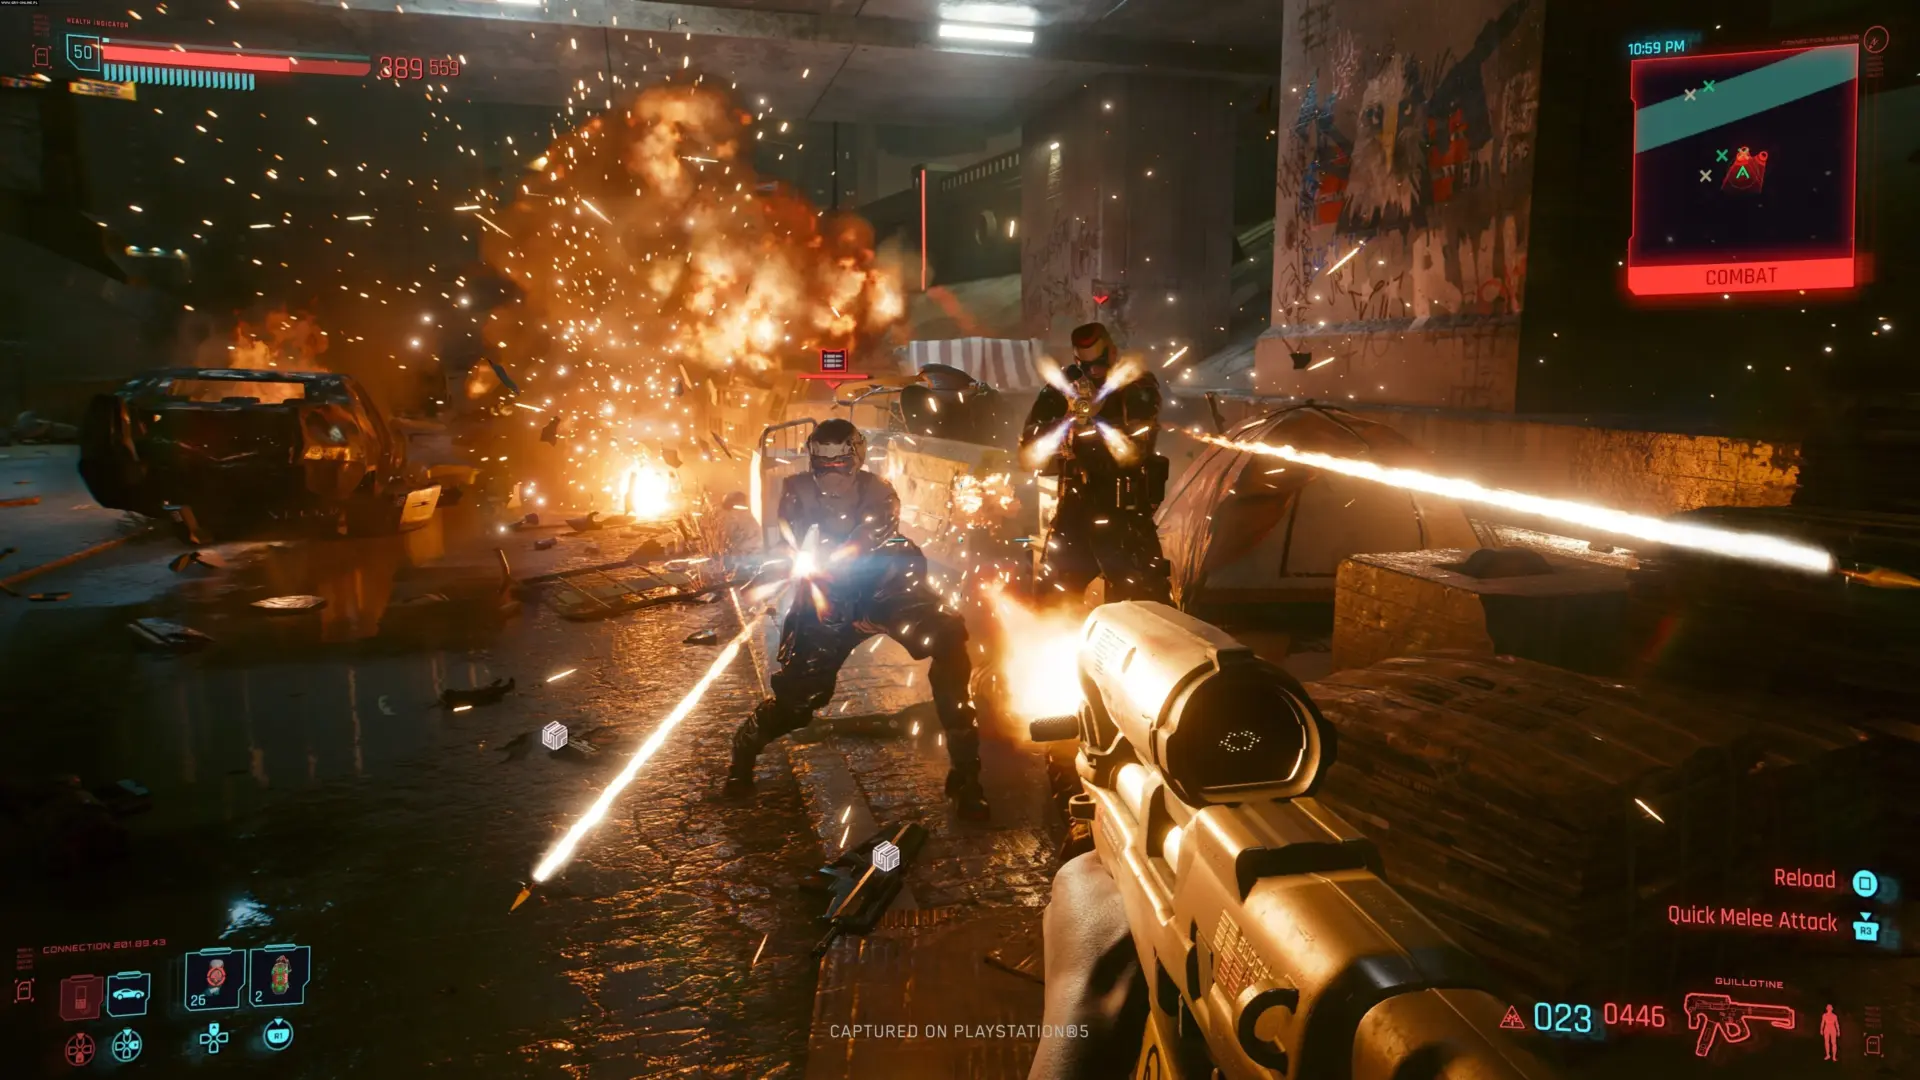 Imagem mostra captura de gameplay do jogo Cyberpunk 2077 no PlayStation 5